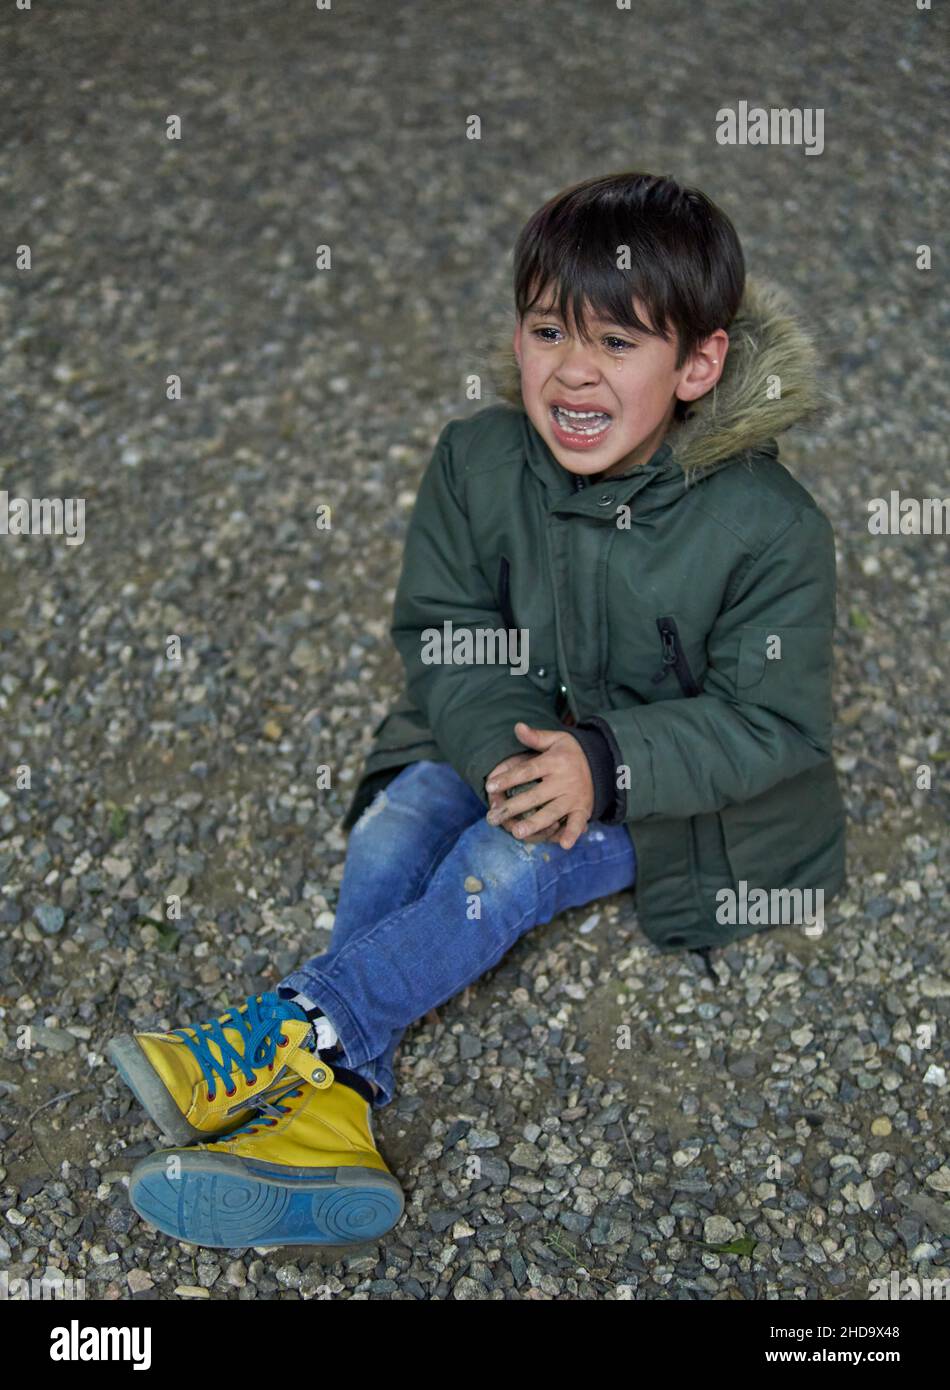 lateinisches Kind, das im Winter auf dem Boden sitzt und untröstlich mit offenem Mund im Freien weint, mit einem grünen Parka. Konzept der Frustration in der Kindheit Stockfoto